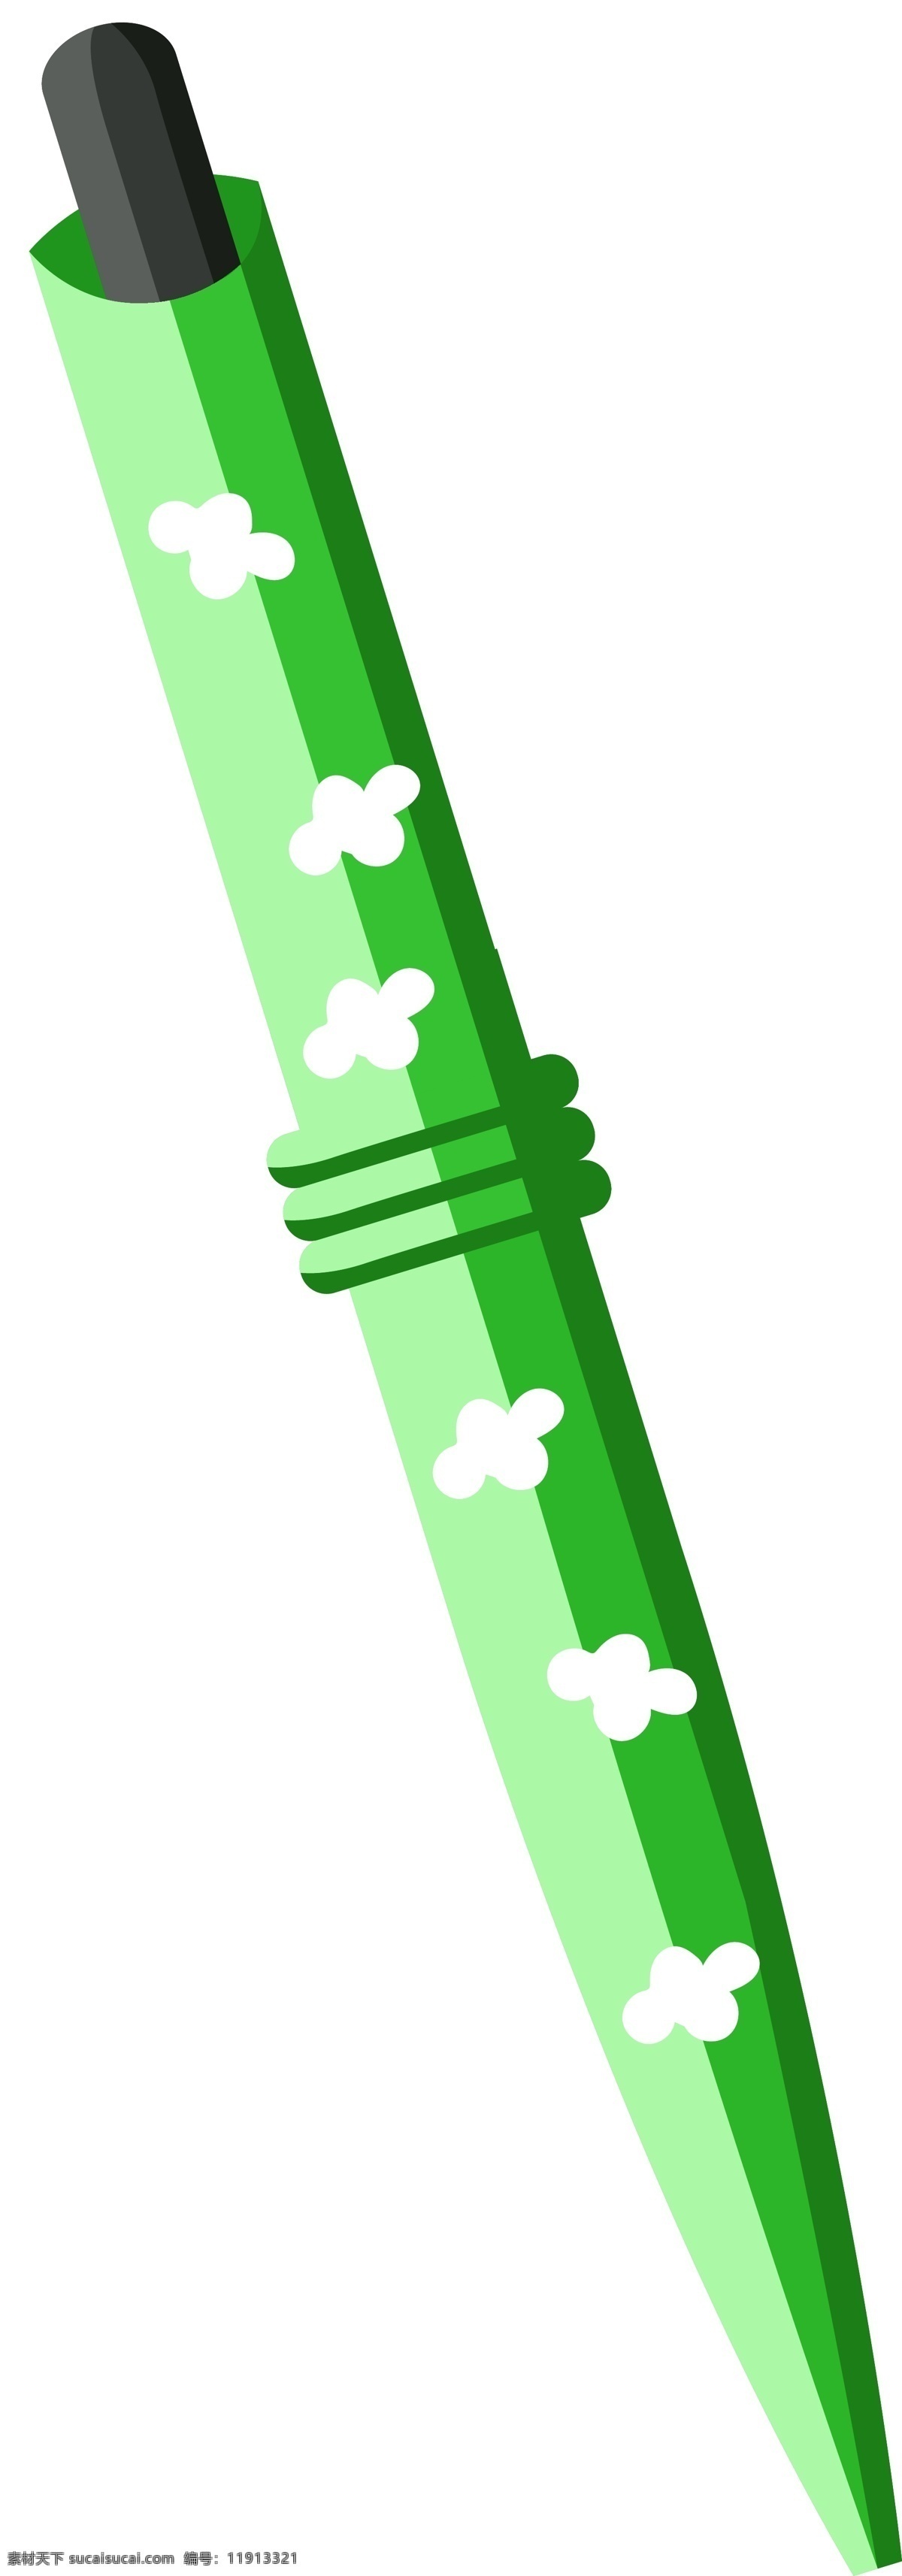 绿色 花朵 笔 插画 白色的花朵 卡通插画 铅笔插画 钢笔插画 毛笔插画 学习用品 绿色的圆珠笔